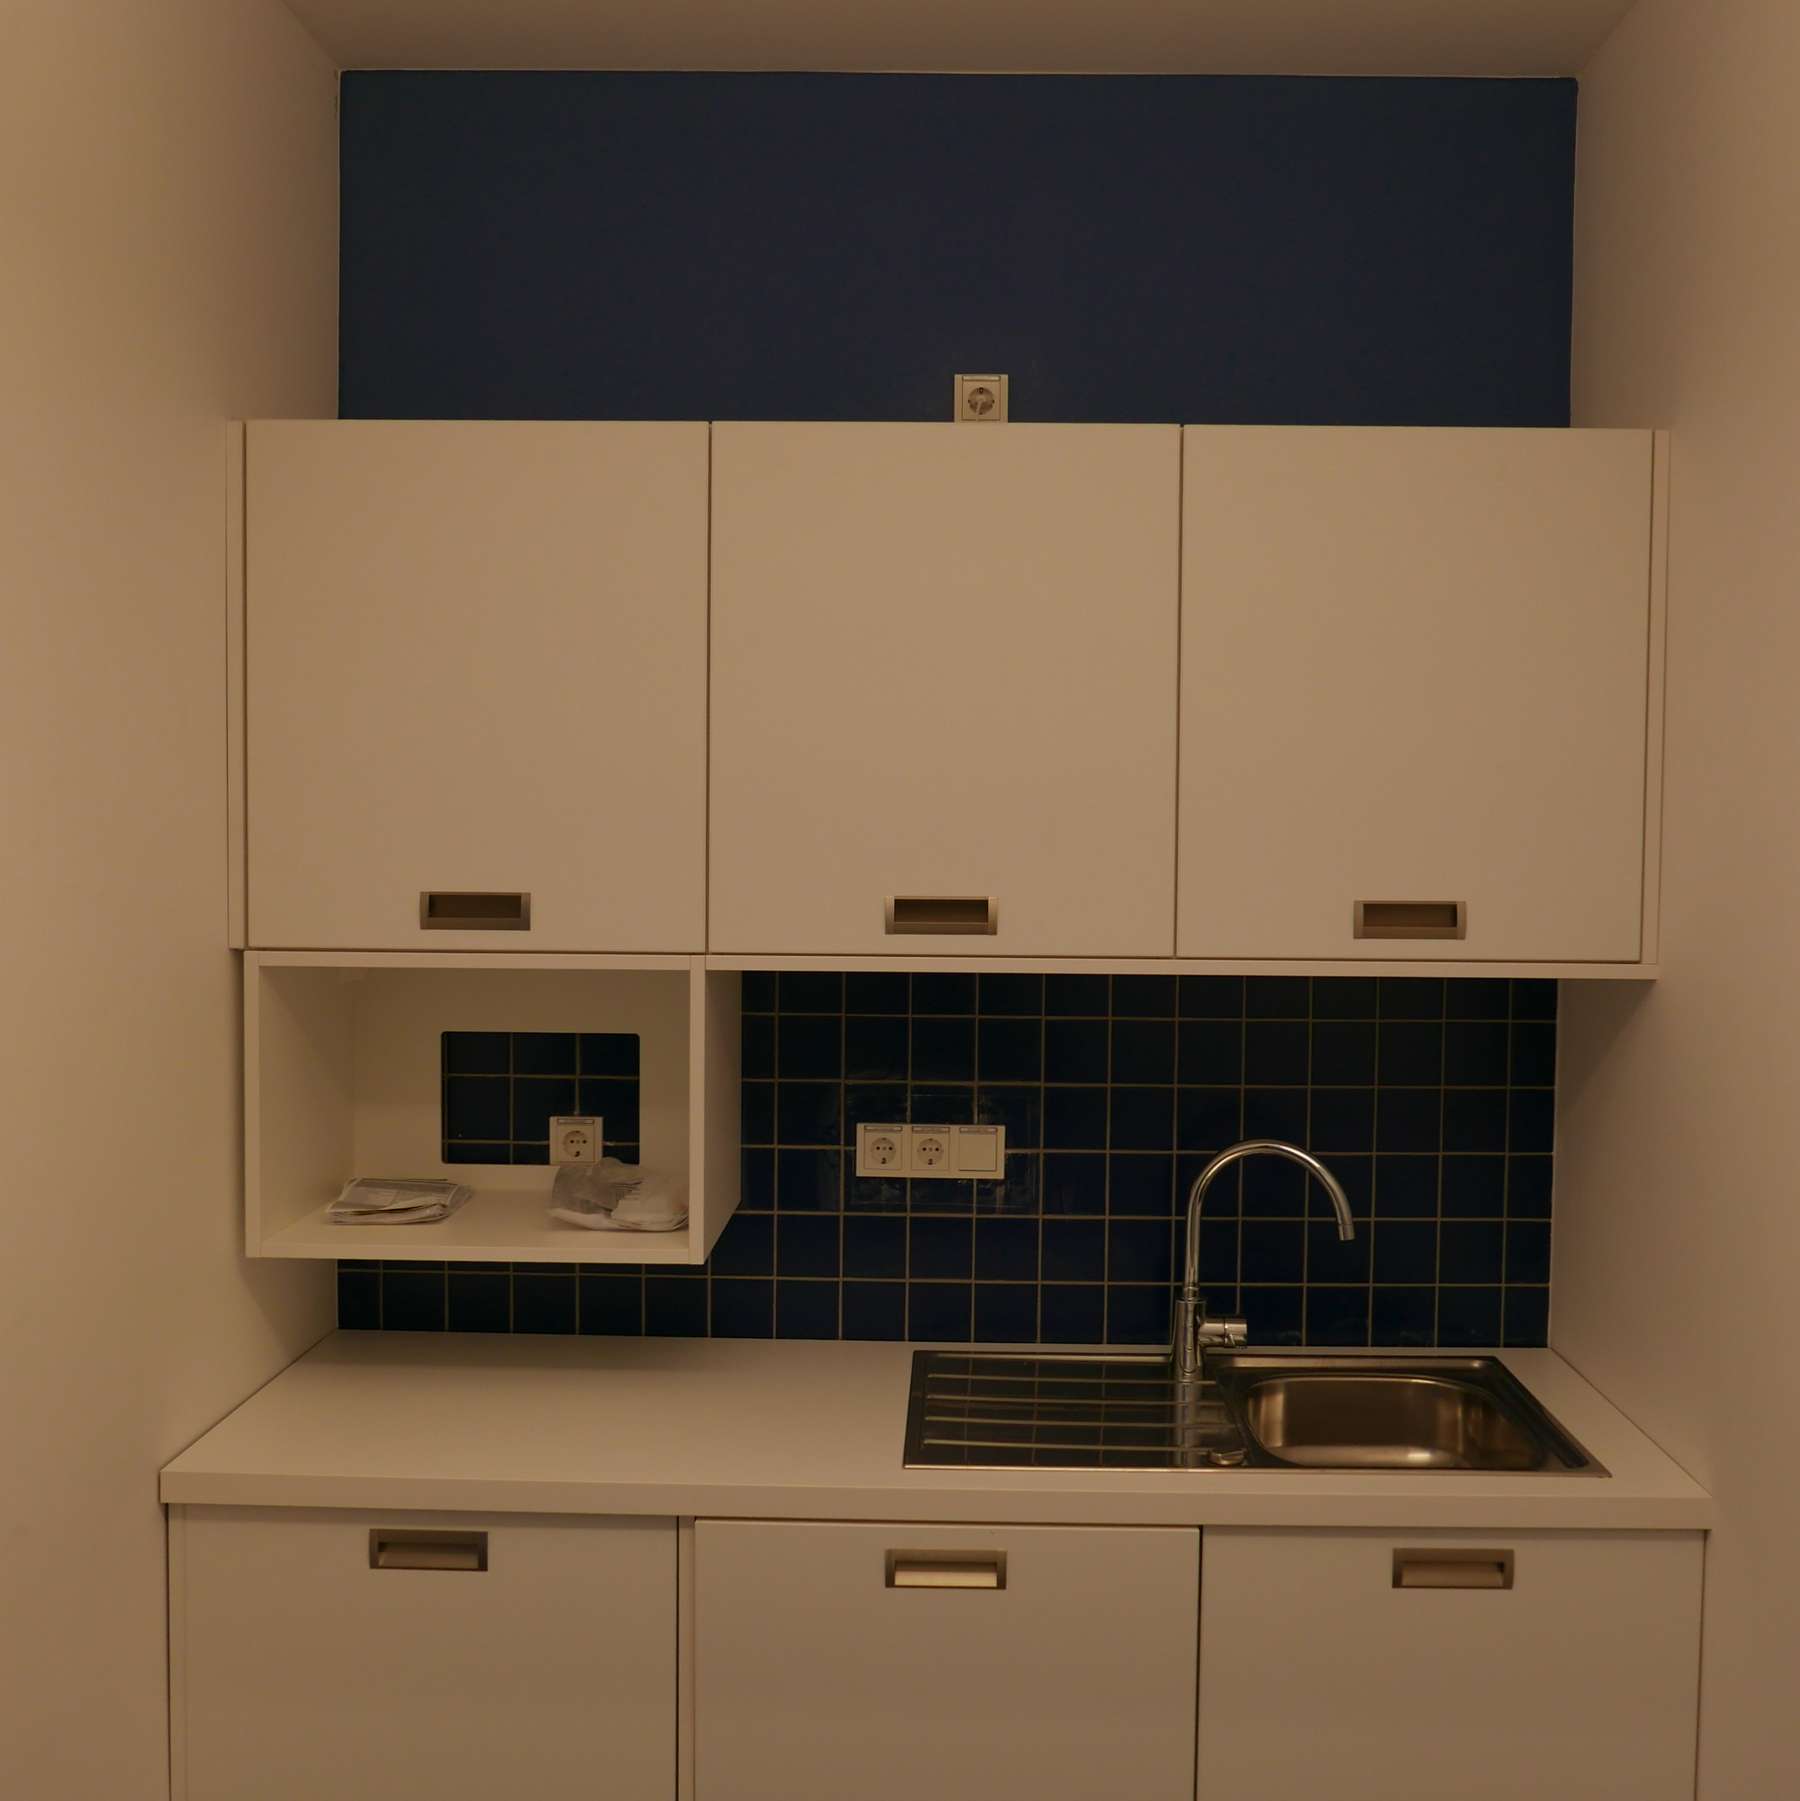 Das Farbschema zeigt die Geschossigkeit an, und wurde im ganzen Gebäude verwendet, z.B. in den WCs und Teeküchen - hier eine weiße Teeküche an einer blauen Wand © J.Rott